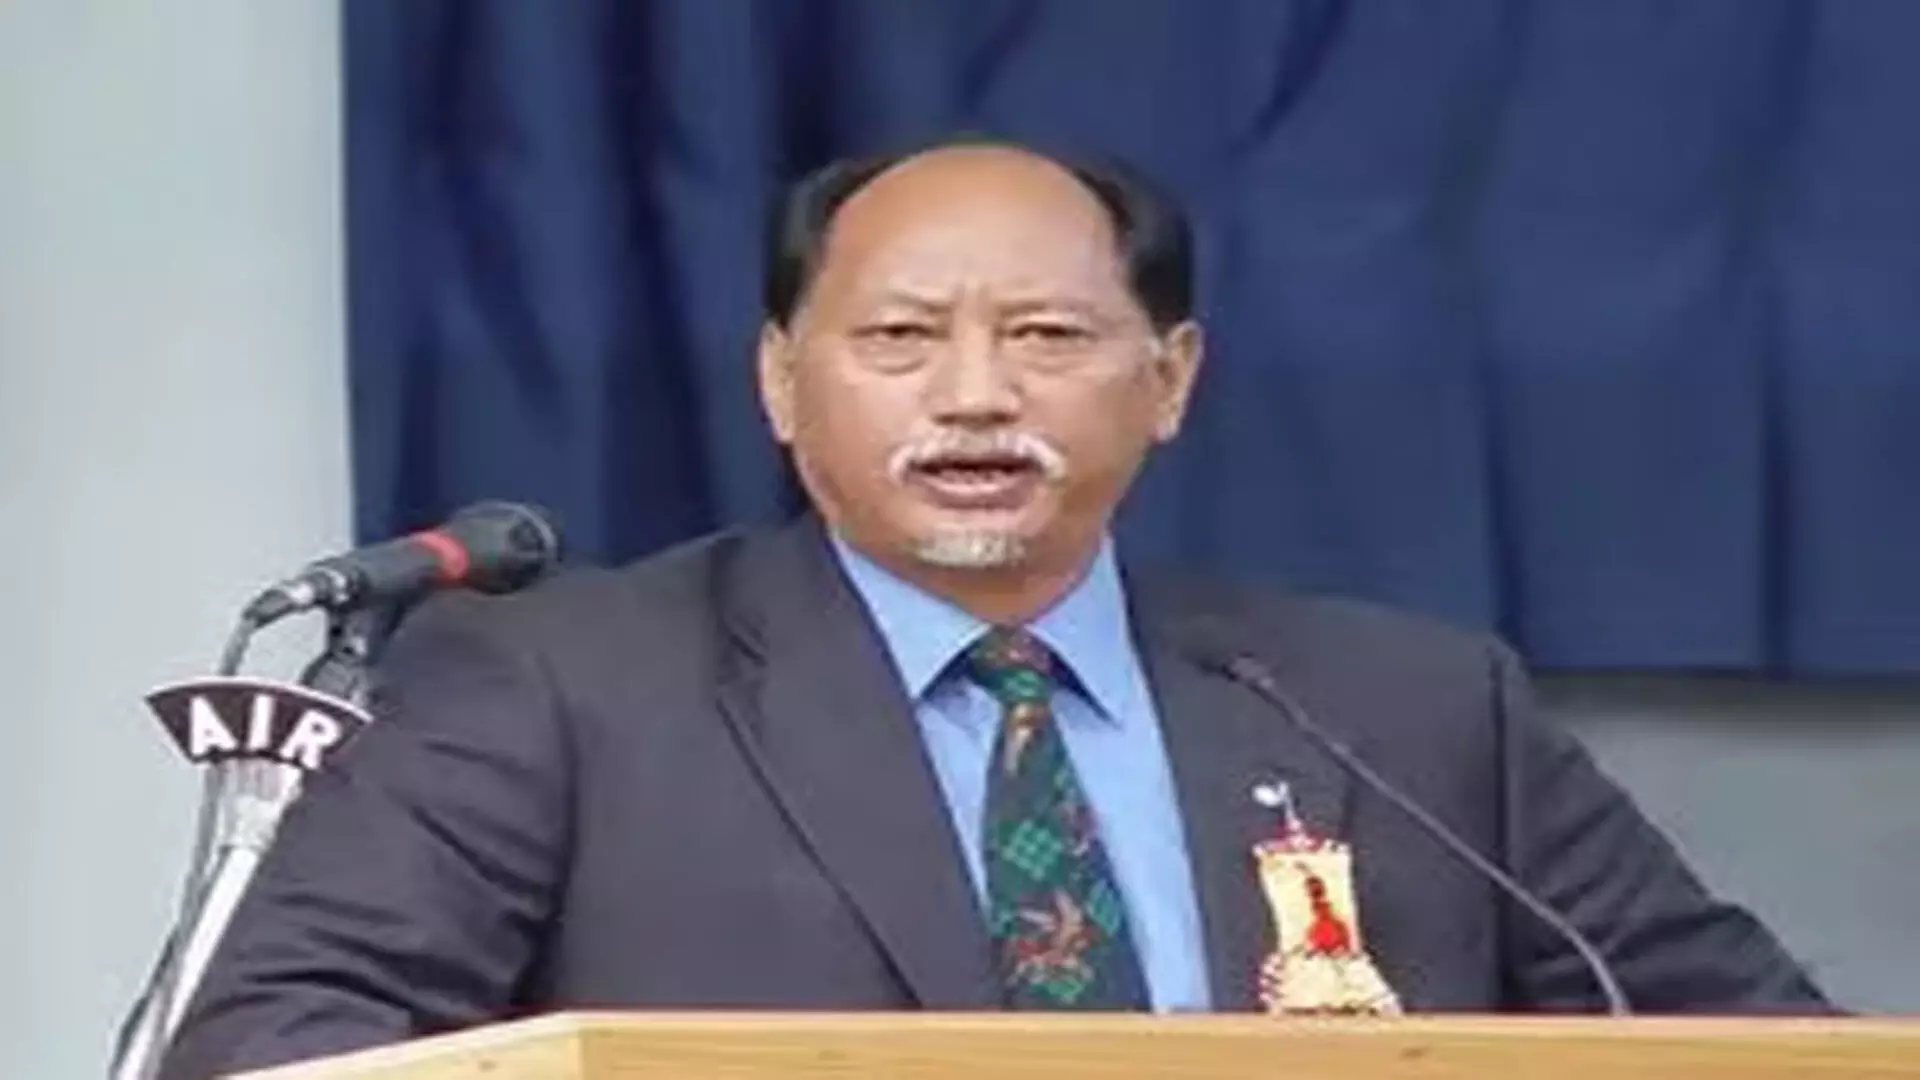 मुख्यमंत्री नेफ्यू रियो ने नागालैंड में शिक्षा प्रणाली में सुधार का आह्वान किया